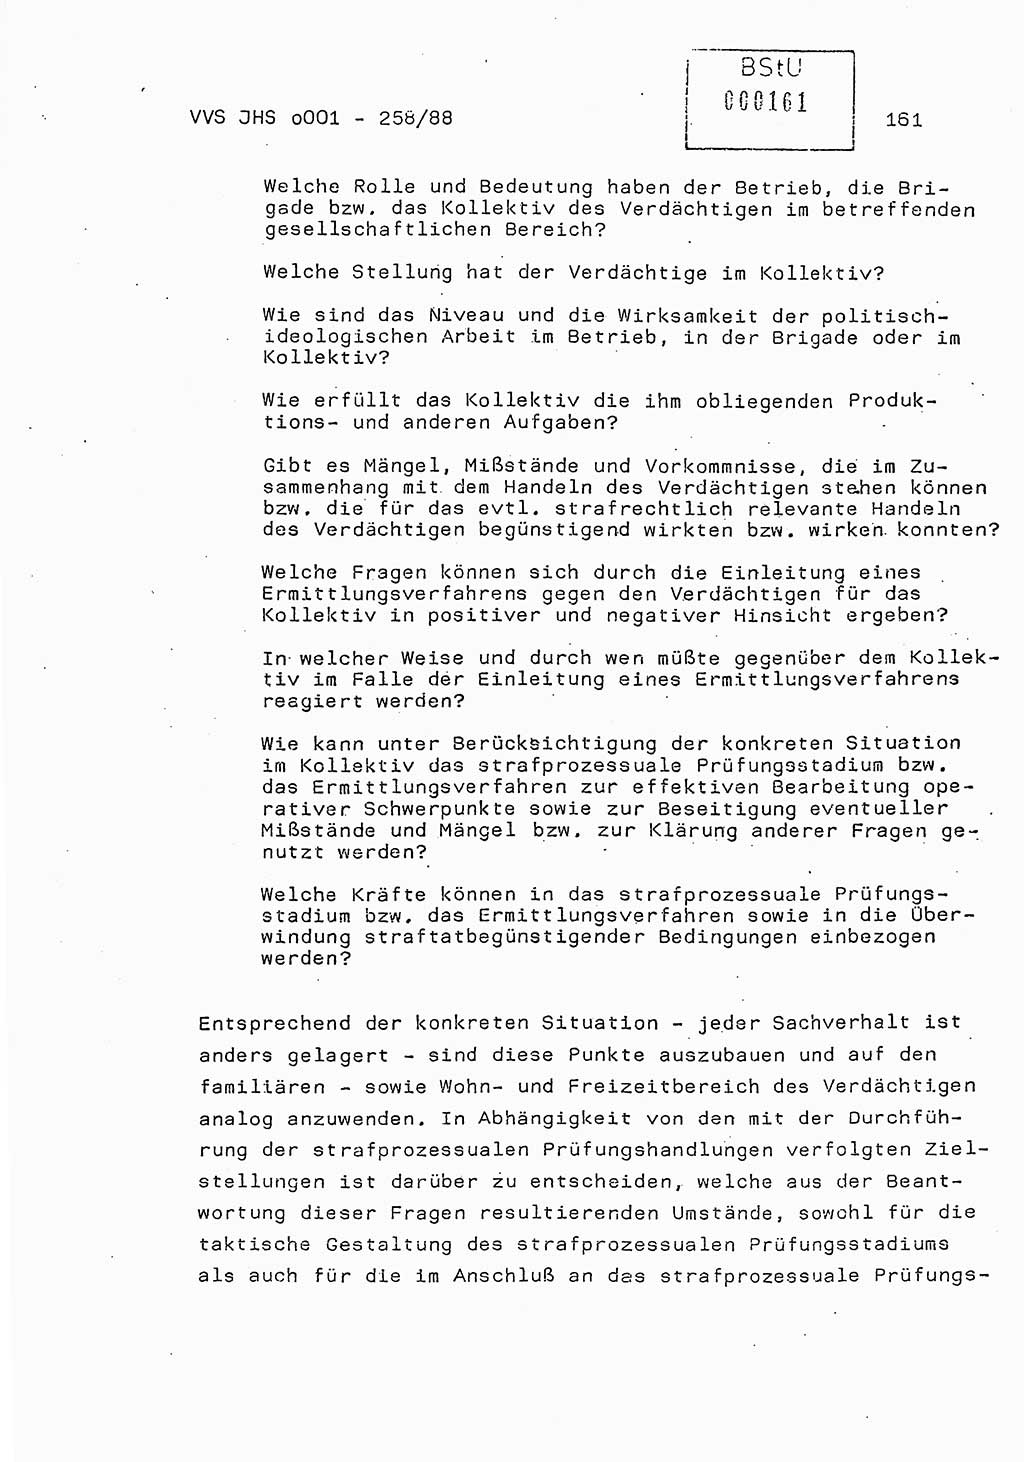 Dissertation, Oberleutnant Uwe Kärsten (JHS), Hauptmann Dr. Joachim Henkel (JHS), Oberstleutnant Werner Mählitz (Leiter der Abt. Ⅸ BV Rostock), Oberstleutnant Jürgen Tröge (HA Ⅸ/AKG), Oberstleutnant Winfried Ziegler (HA Ⅸ/9), Major Wolf-Rüdiger Wurzler (JHS), Ministerium für Staatssicherheit (MfS) [Deutsche Demokratische Republik (DDR)], Juristische Hochschule (JHS), Vertrauliche Verschlußsache (VVS) o001-258/88, Potsdam 1988, Seite 161 (Diss. MfS DDR JHS VVS o001-258/88 1988, S. 161)